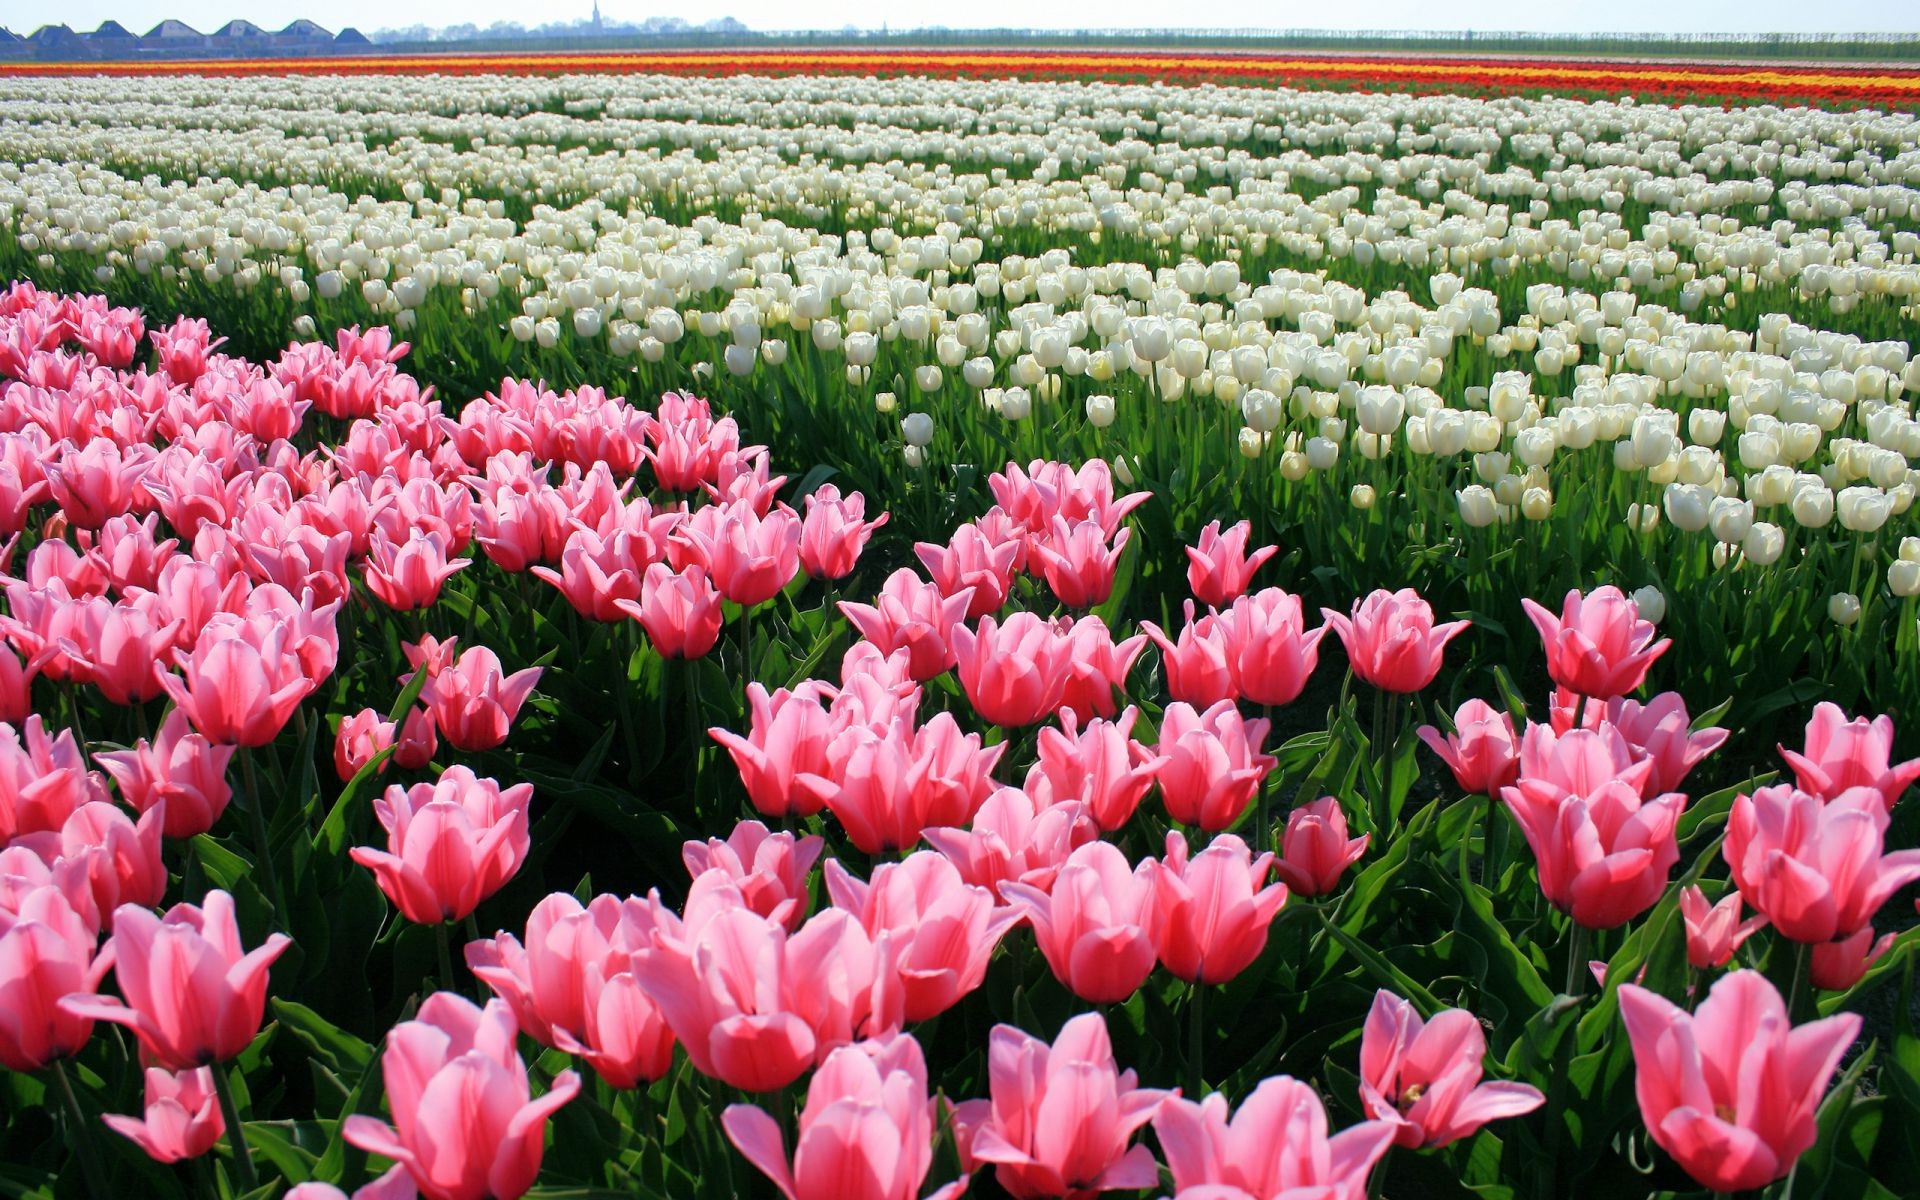 тюльпаны тюльпан цветок природа флора сад поле лето цветочные блюминг рост лепесток лист лампы цвет яркий сезон трава на открытом воздухе пасха